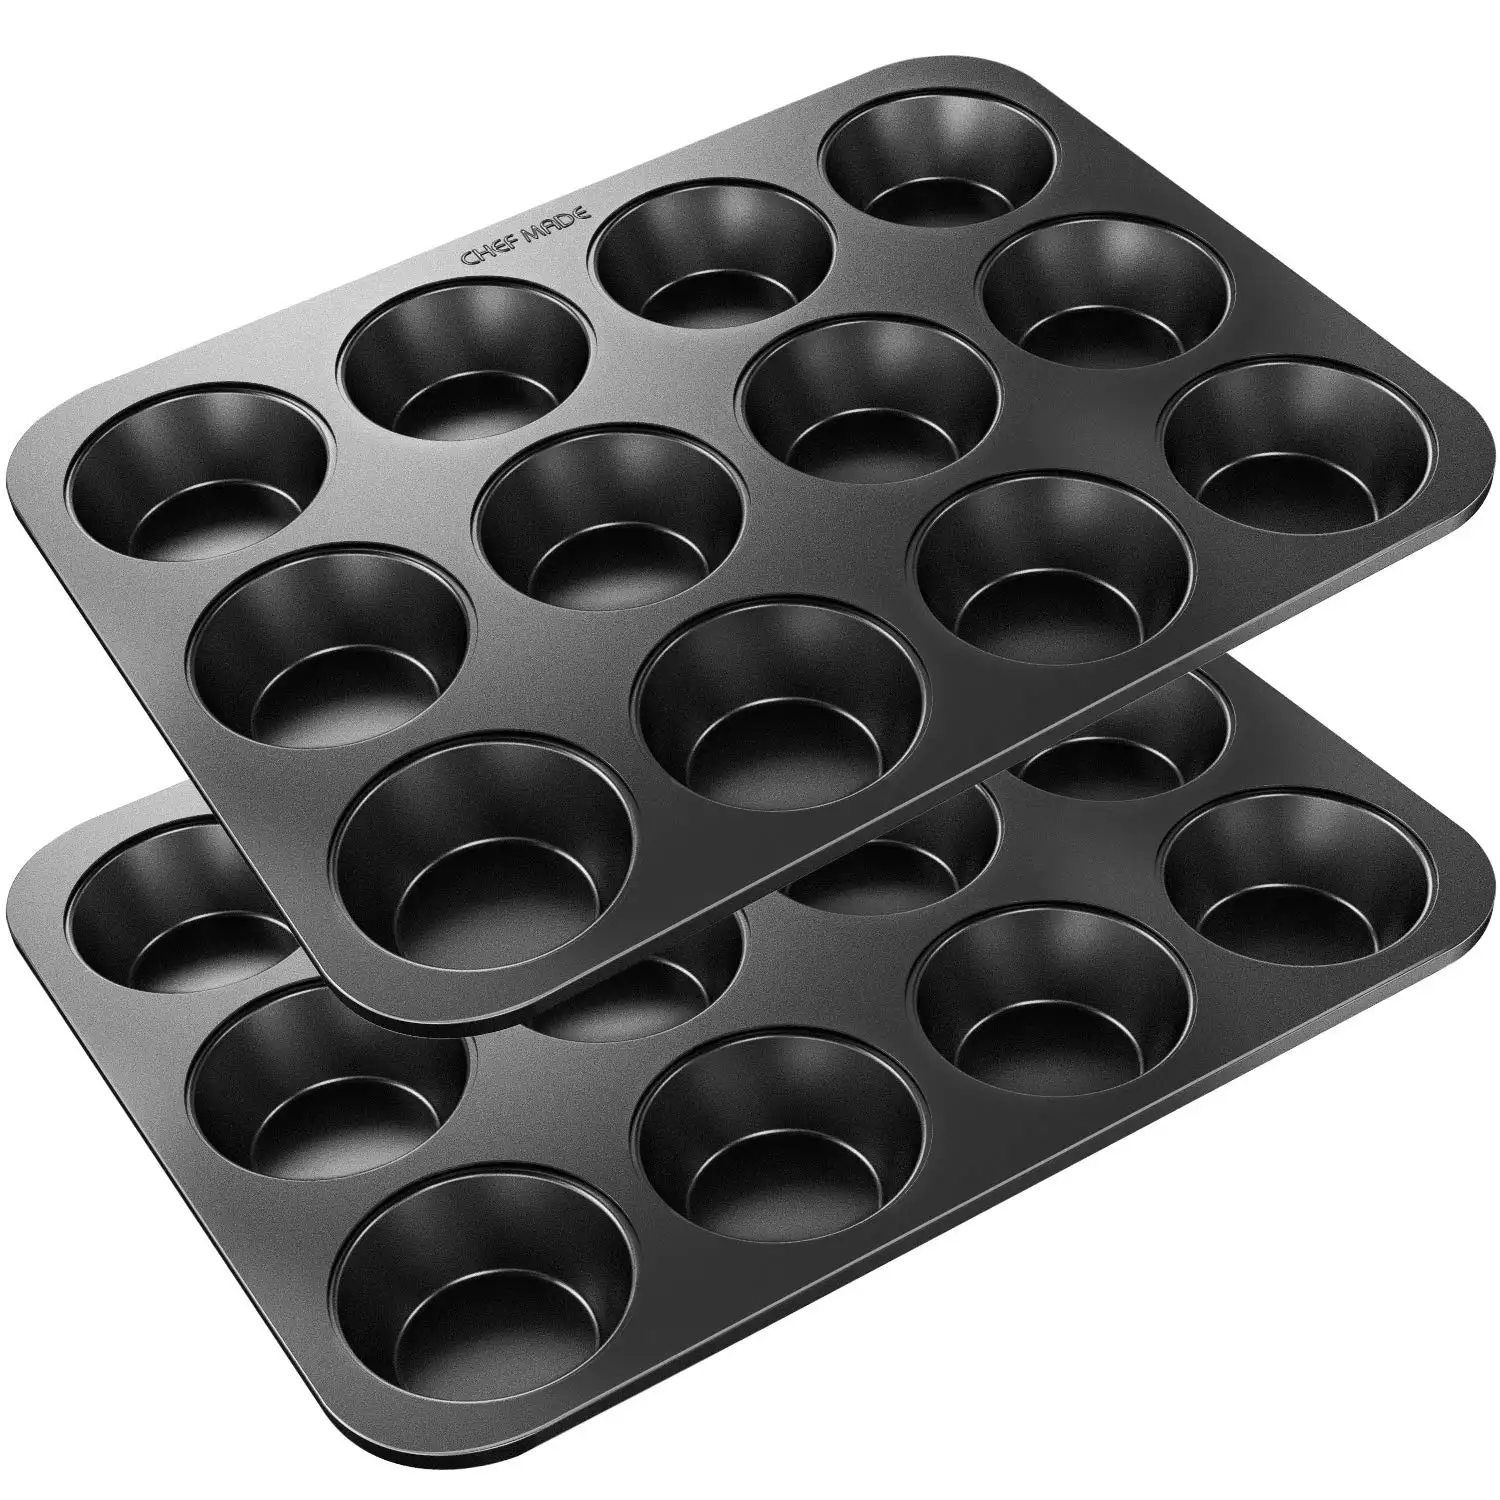 CHEFMADE Lò Thép Carbon Bakeware Không Dính 12 Cup Bánh Tròn KHUÔN Cupcake Tin Muffin Khuôn Khay Baking Pan